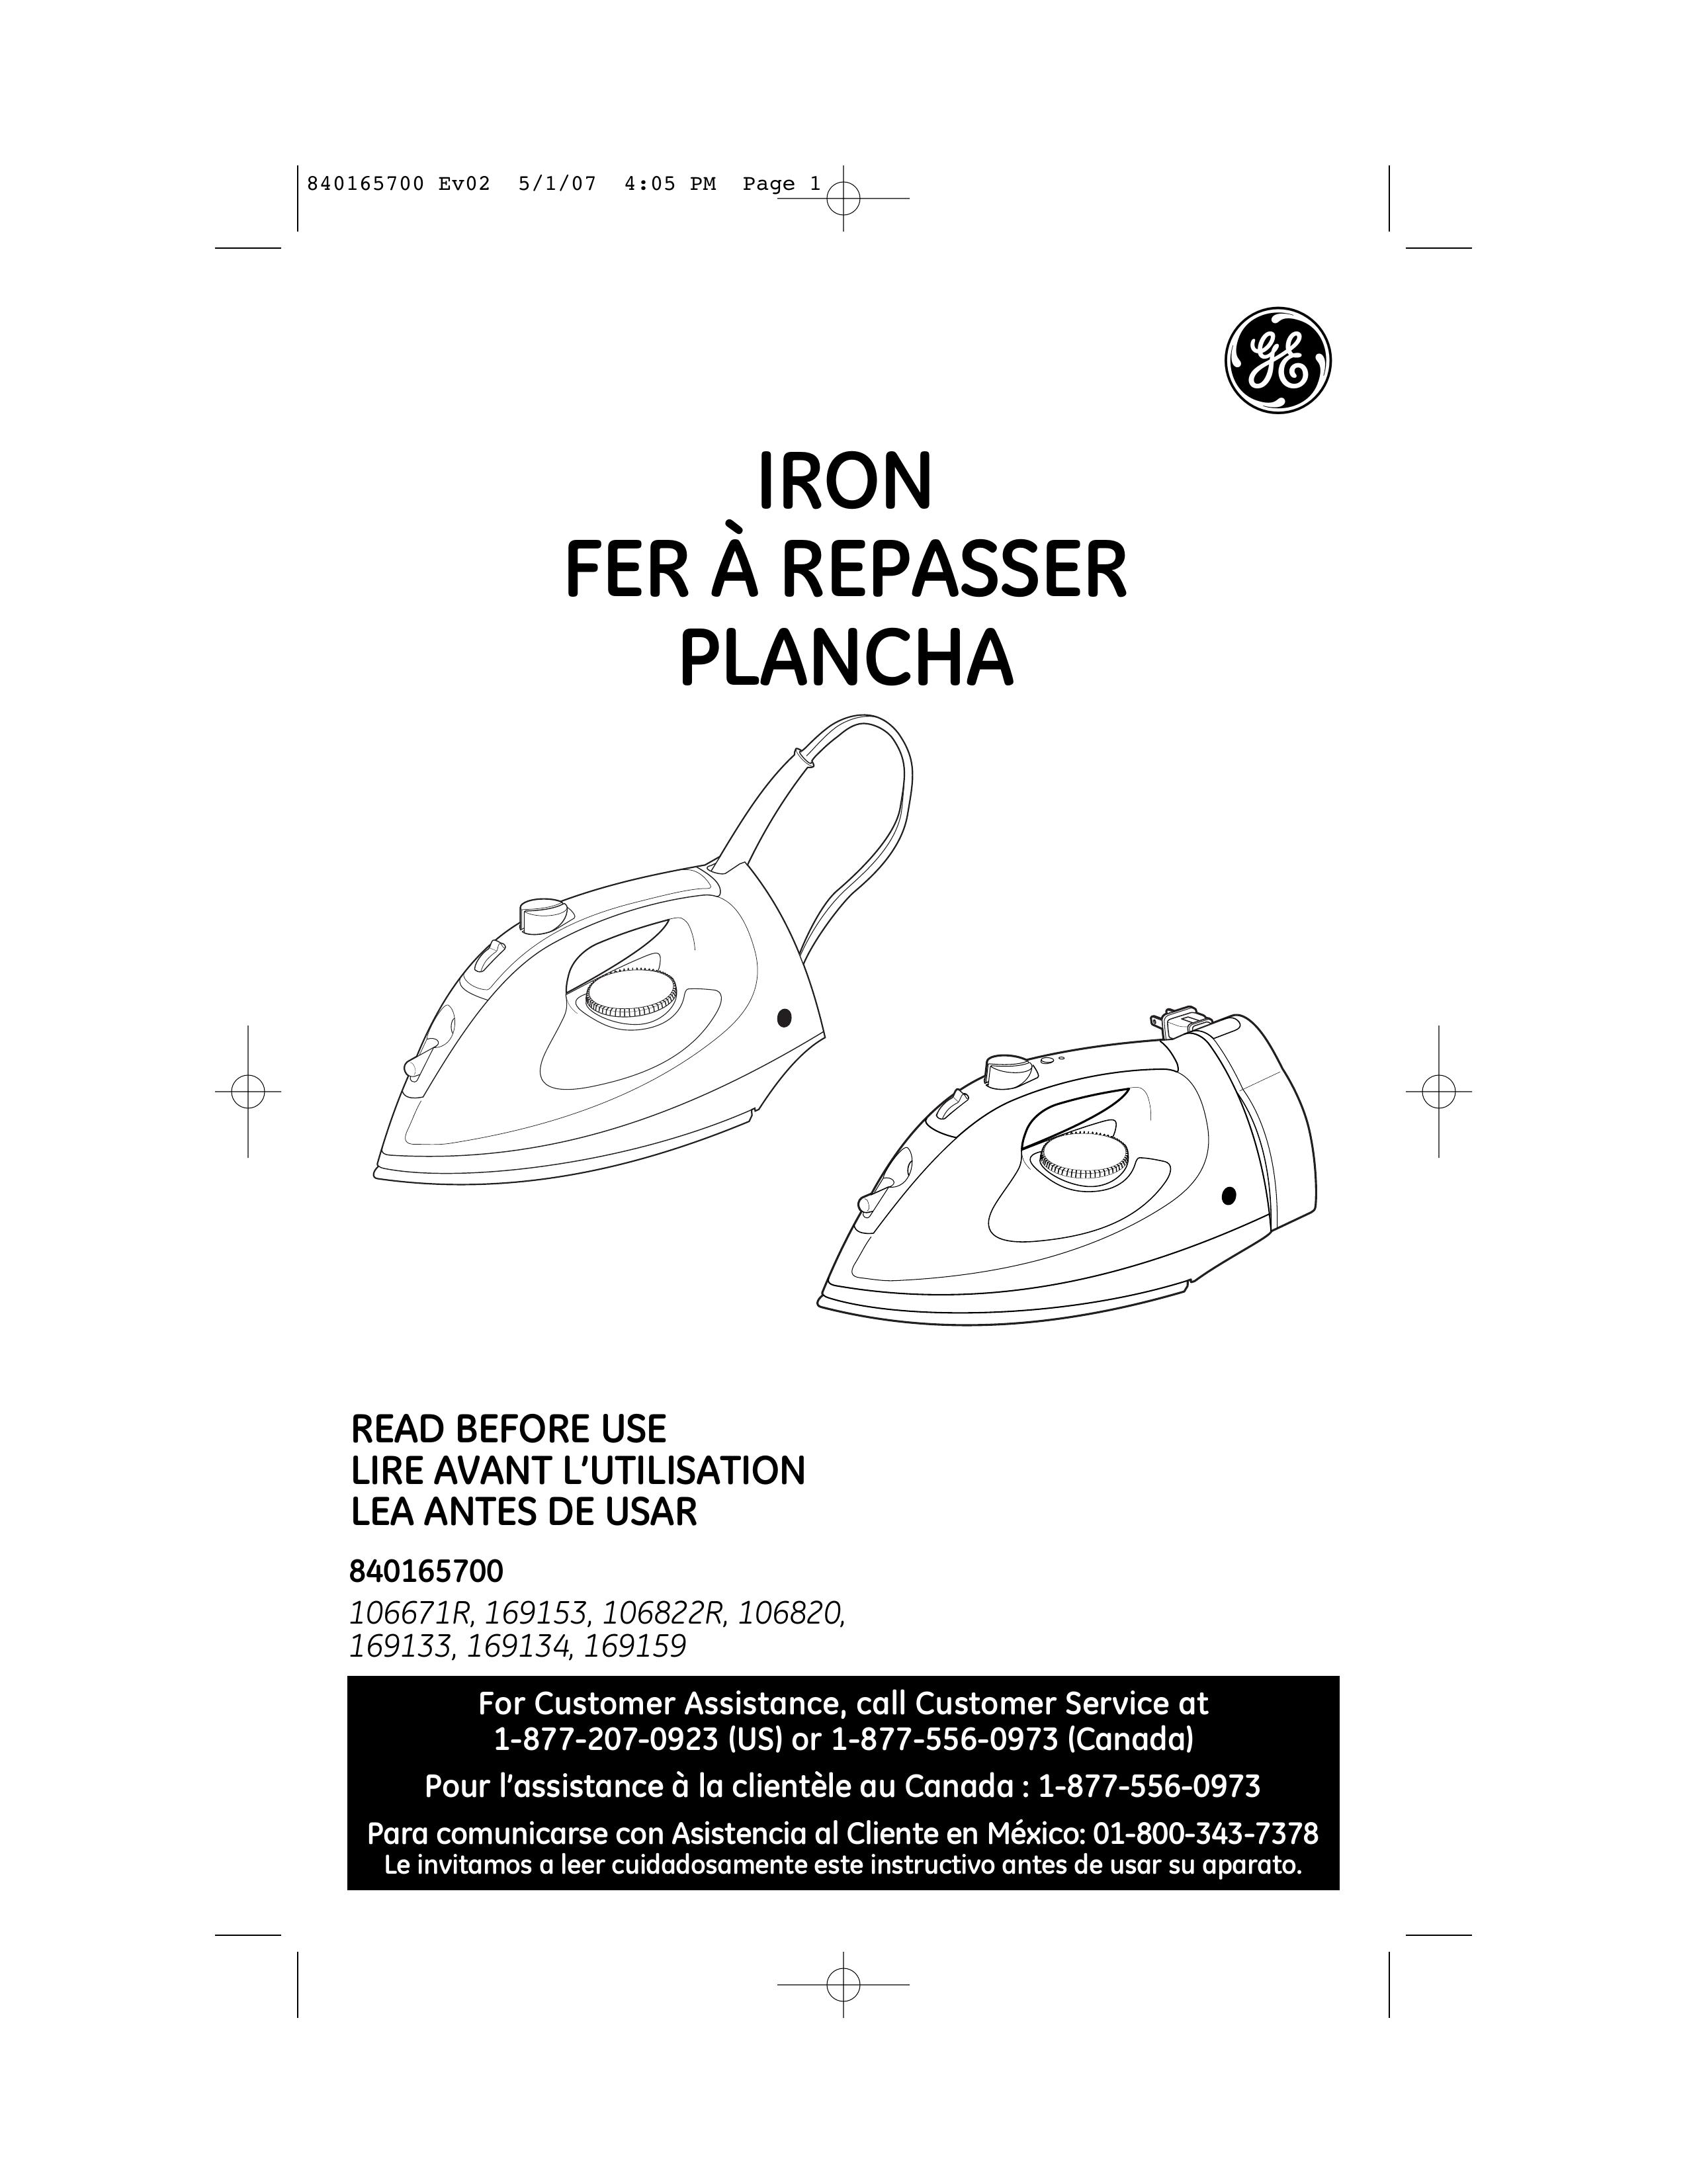 GE 106820 Iron User Manual